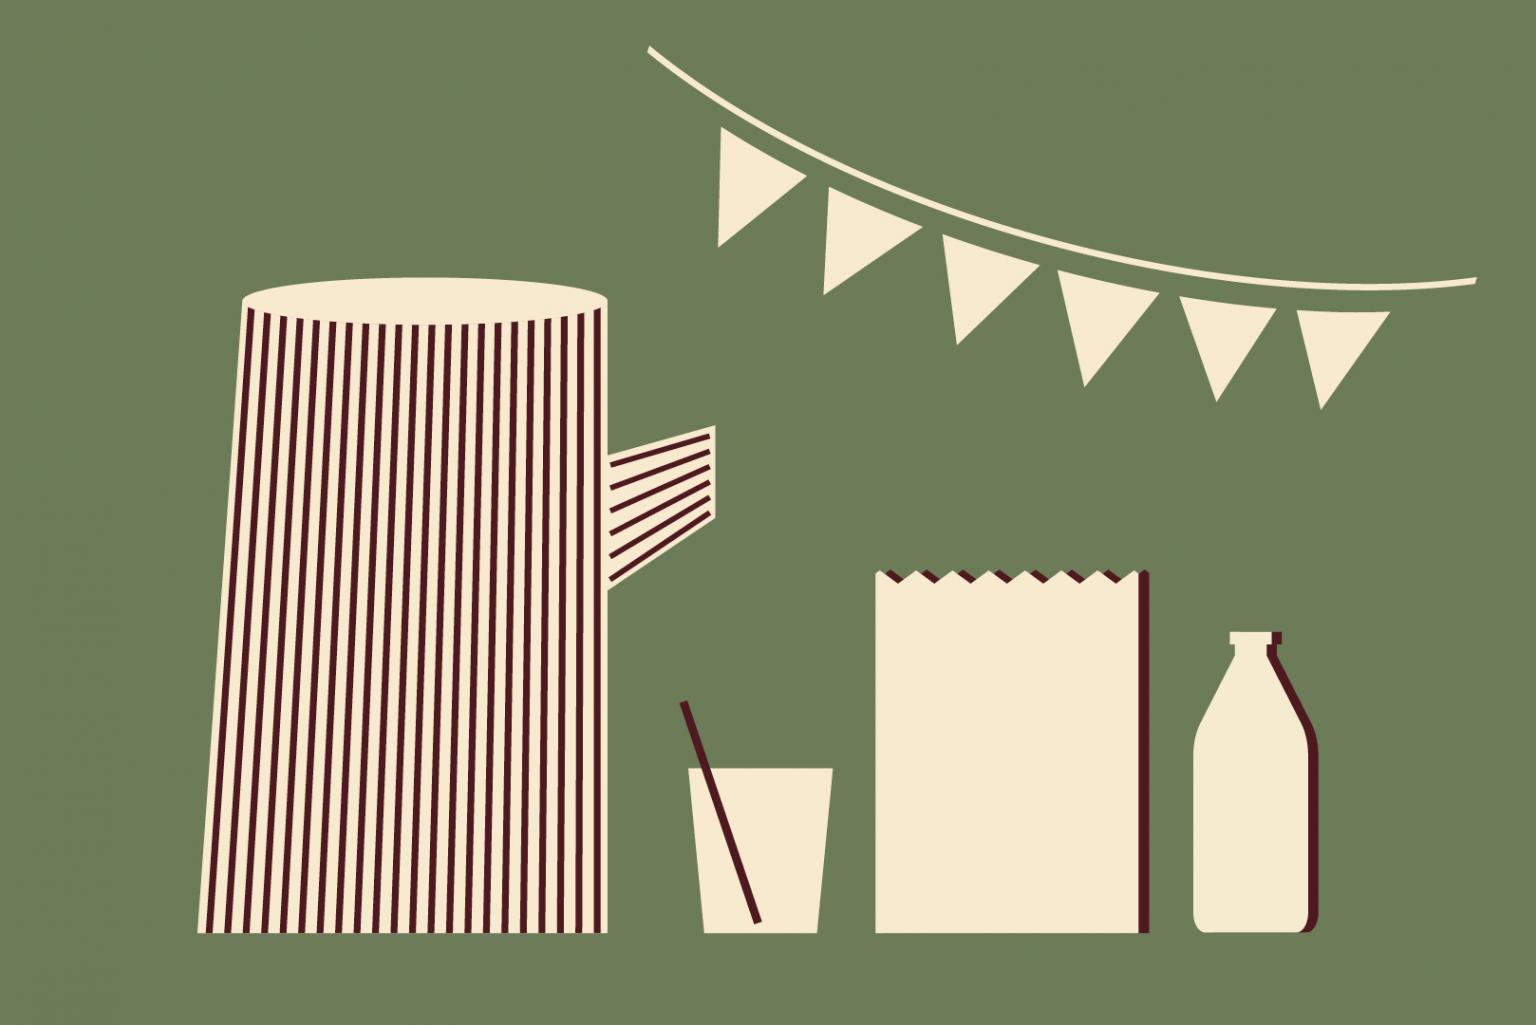 Eine grafische Illustration: Auf grünem Hintergrund sind eine Wimpelkette, eine Karaffe mit einem Glas, ein Popcorn-Becher und eine Flasche zu sehen.